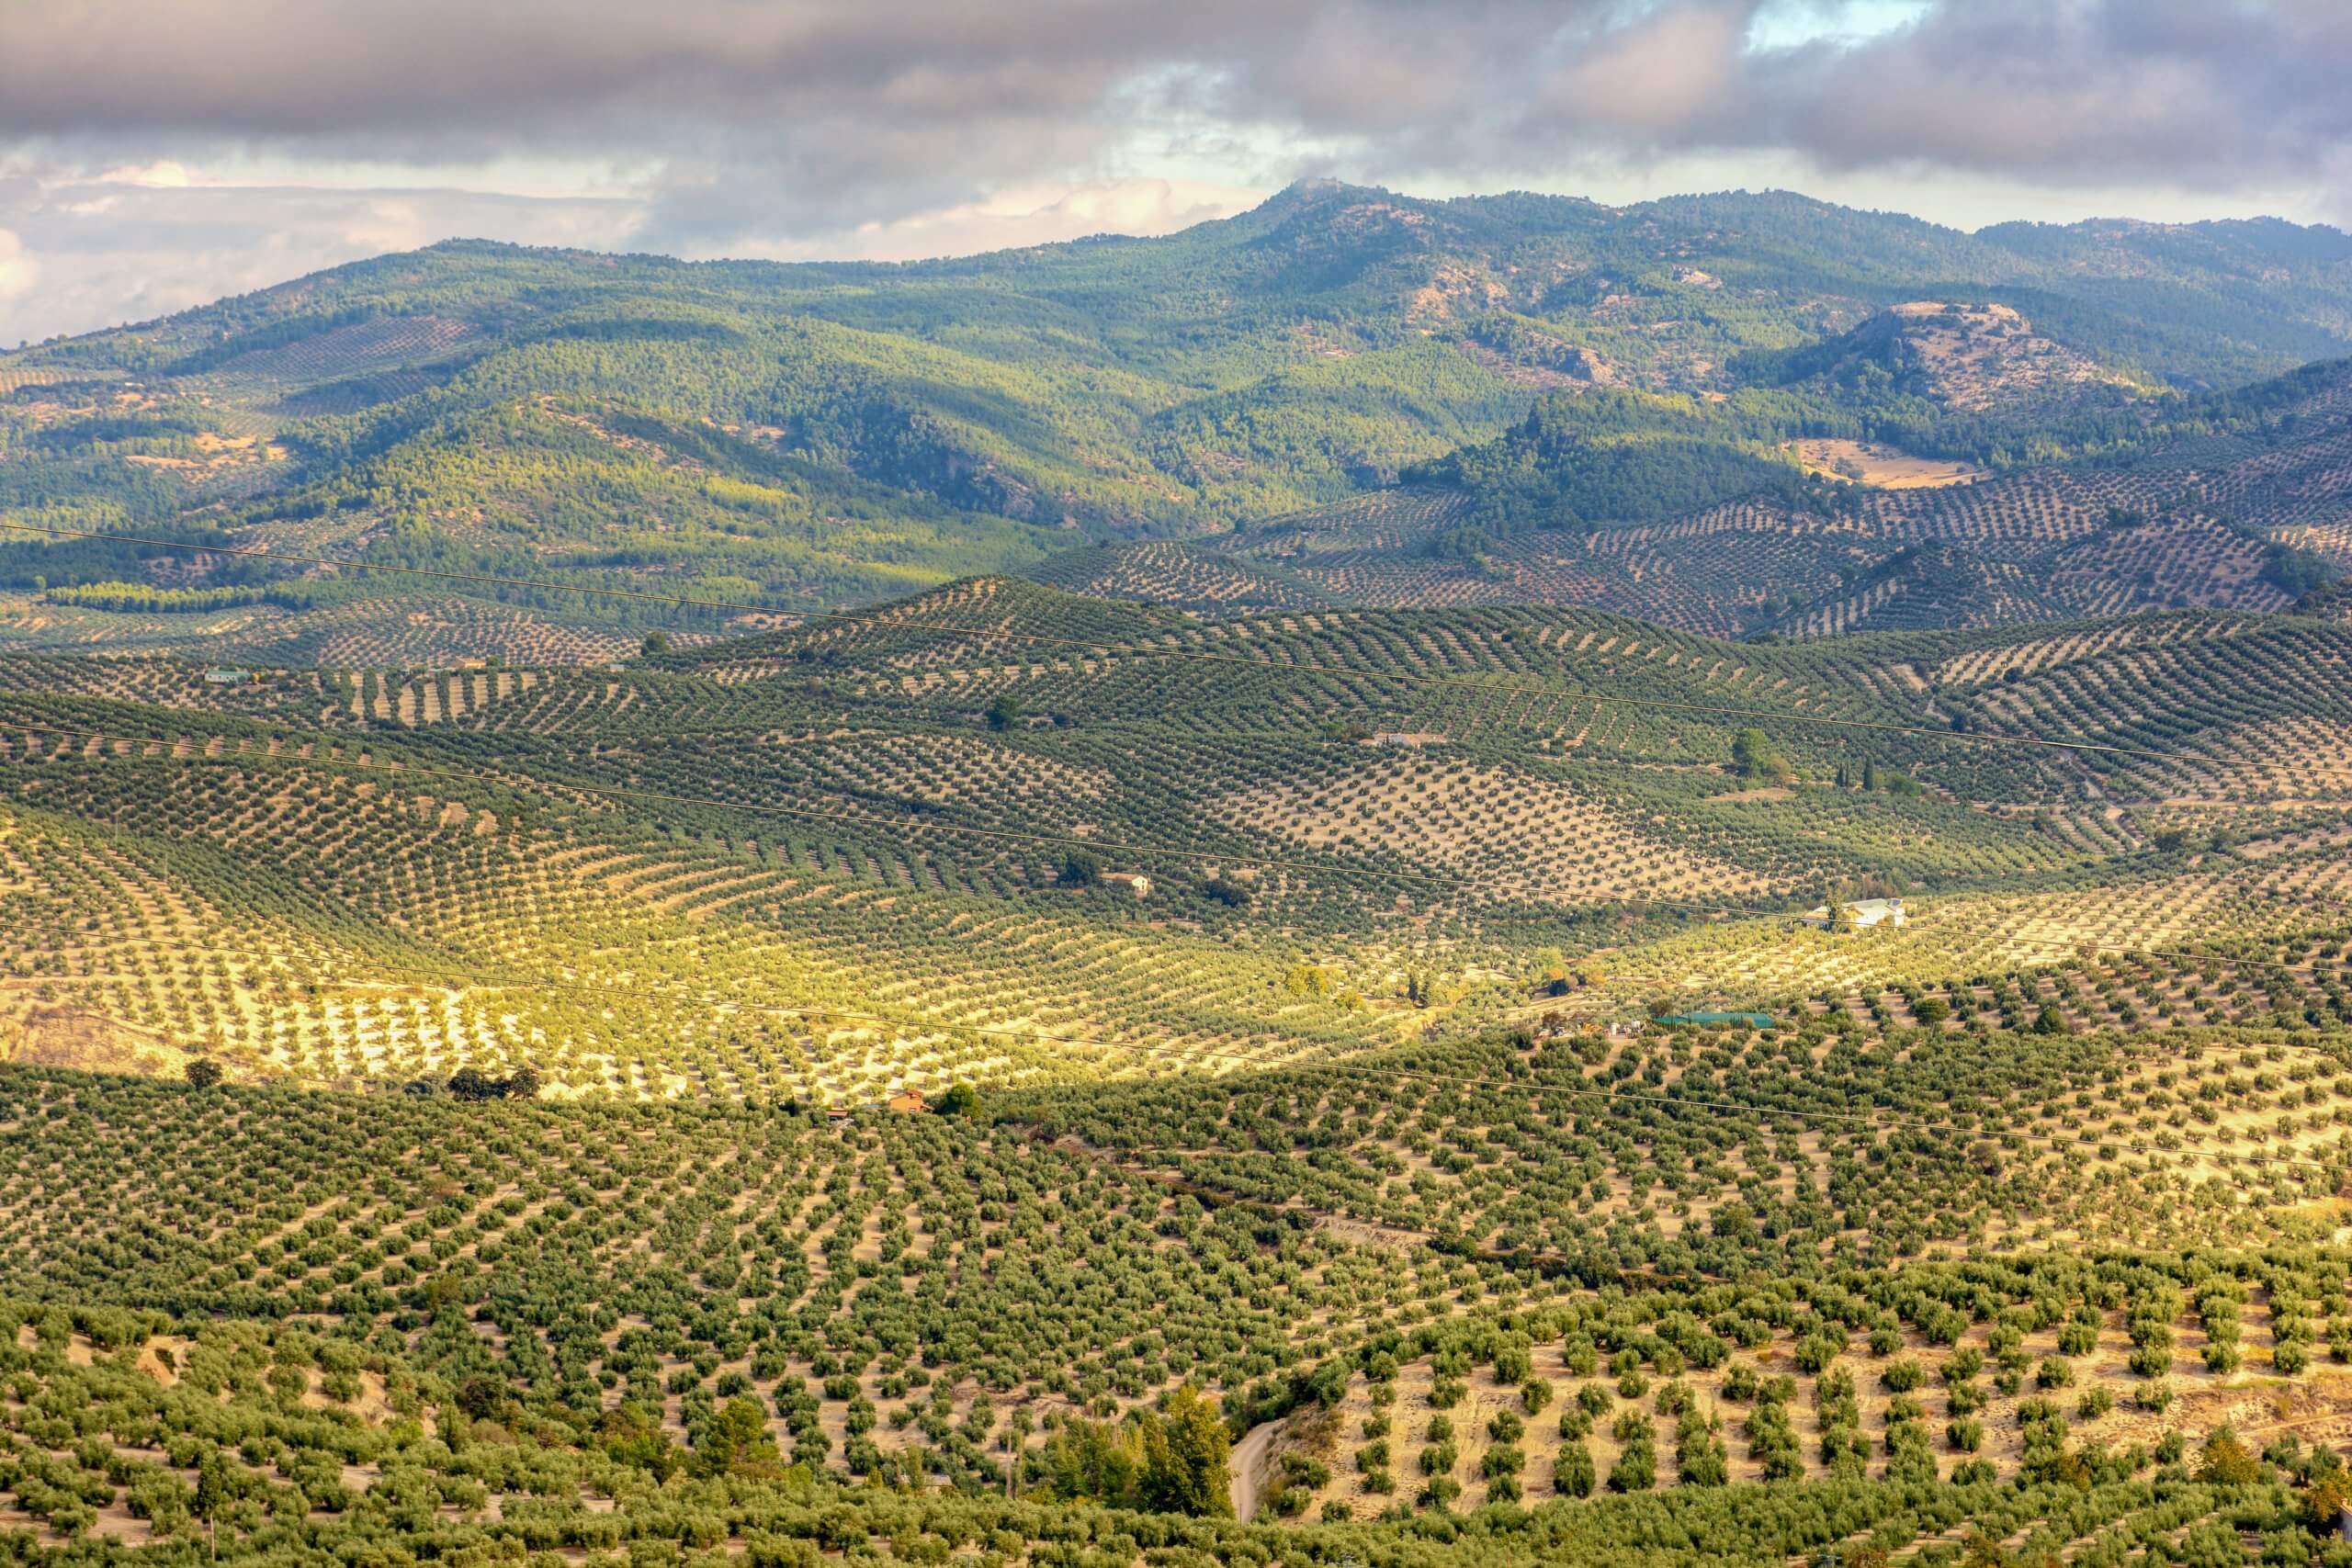 An olive field in Spain